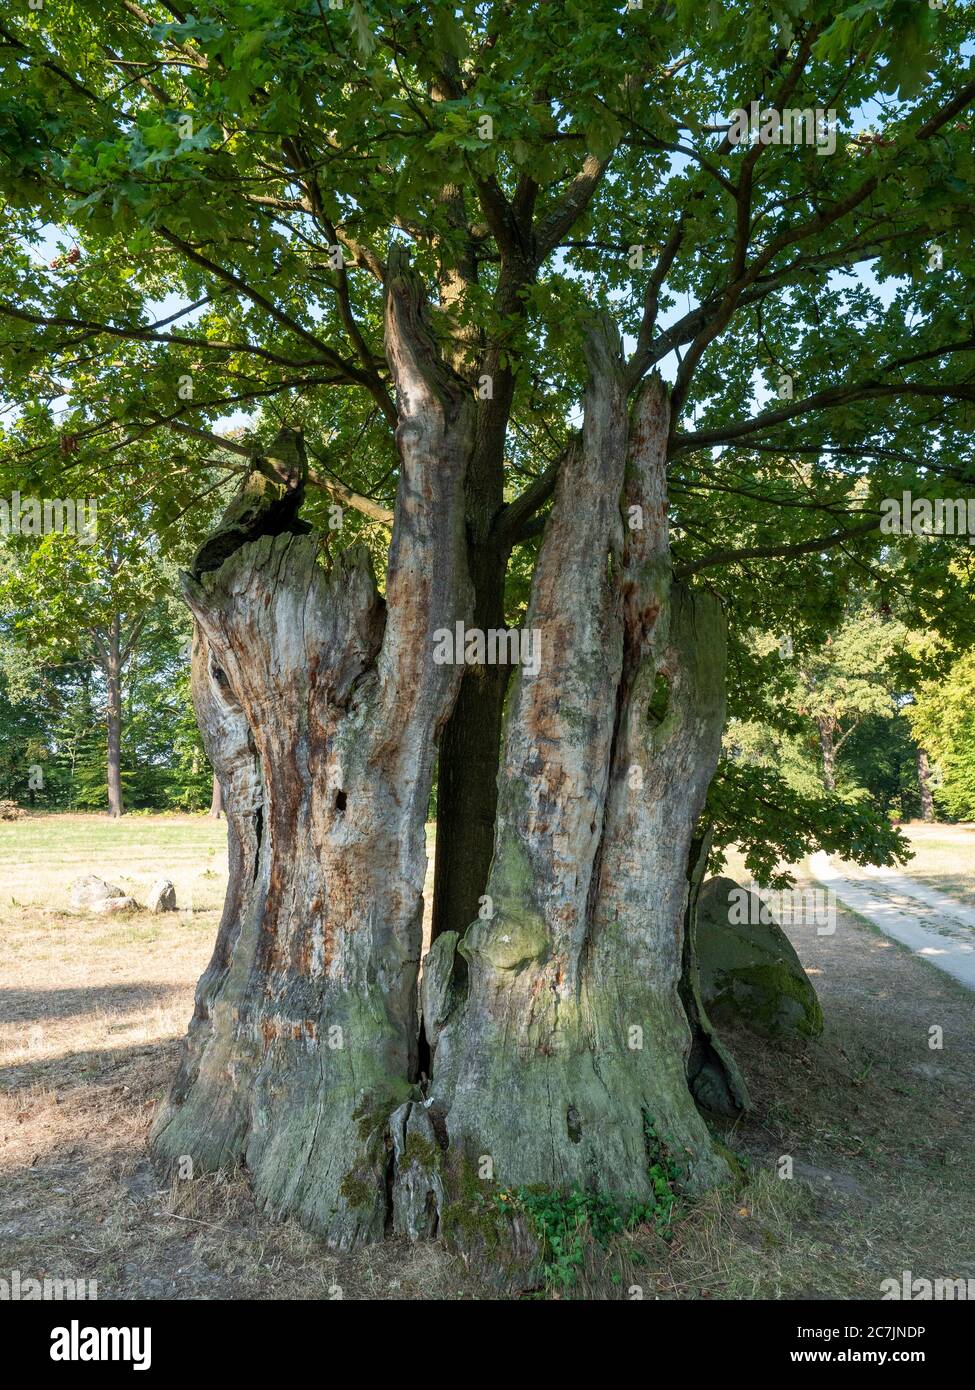 Jungbaum wächst im alten Hohlbaummark, Muskauer Park, UNESCO Weltkulturerbe, Bad Muskau, Oberlausitz, Sachsen, Deutschland Stockfoto